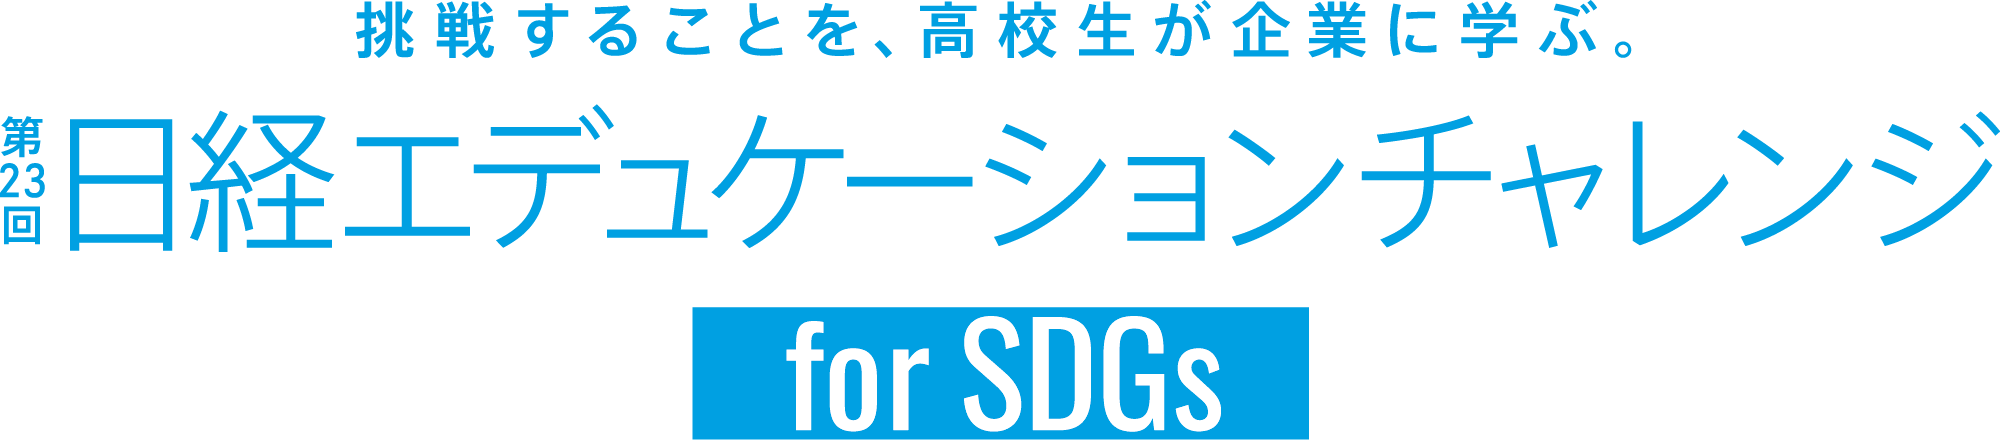 第23回日経エデュケーションチャレンジ for SDGs